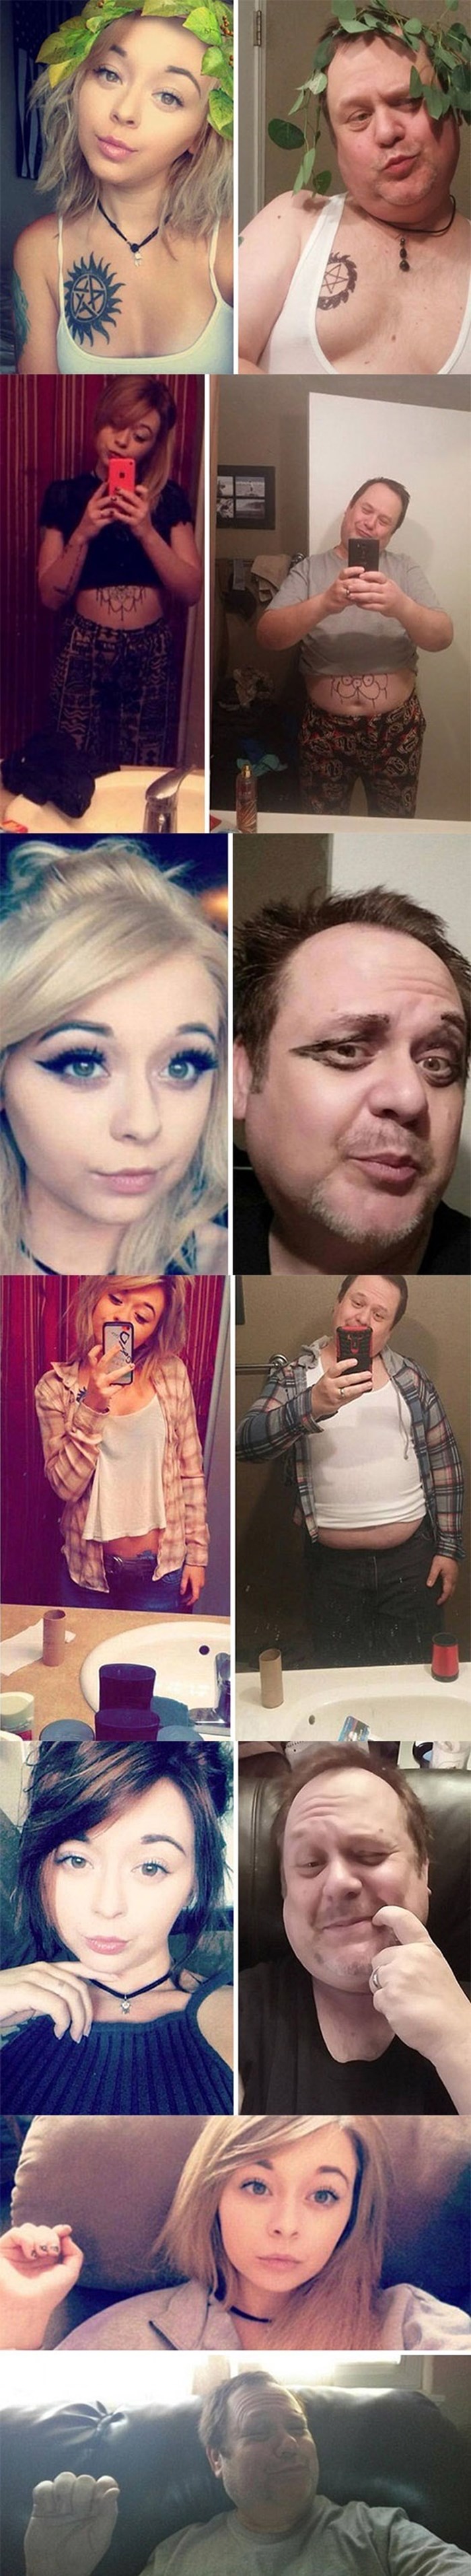 Otac je odlučio napraviti svoju verziju kćerkinih selfija